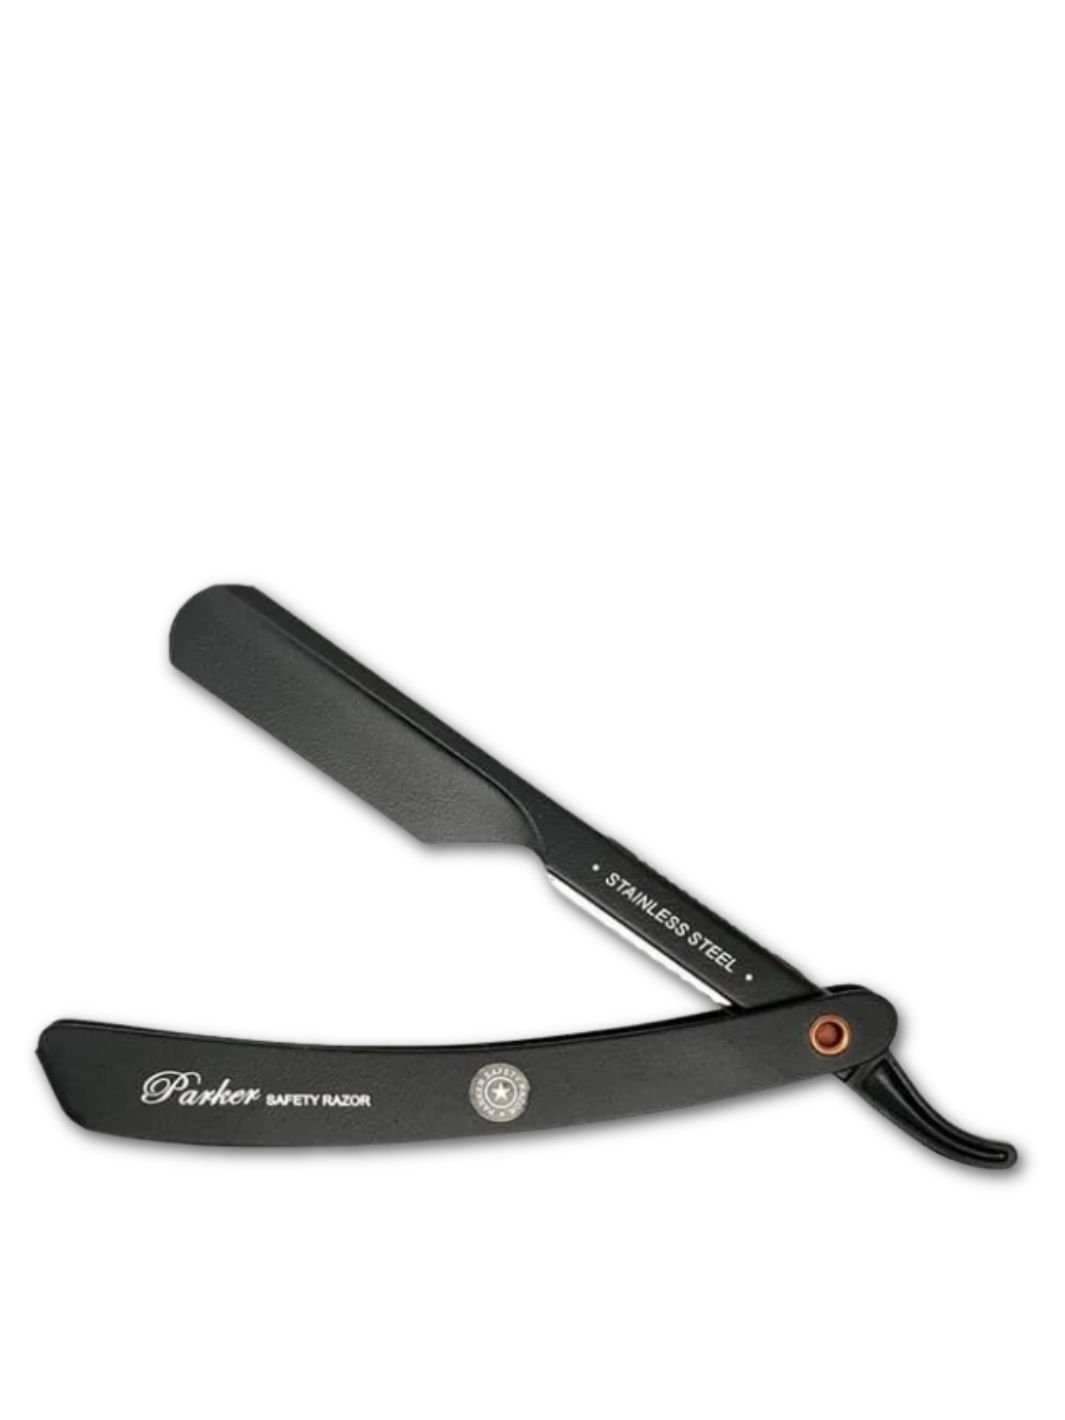 Parker PTABK einstellbares Rasiermesser mit drei Klingenpositionen für präzise Barbiertechniken, verfügbar bei Phullcutz.